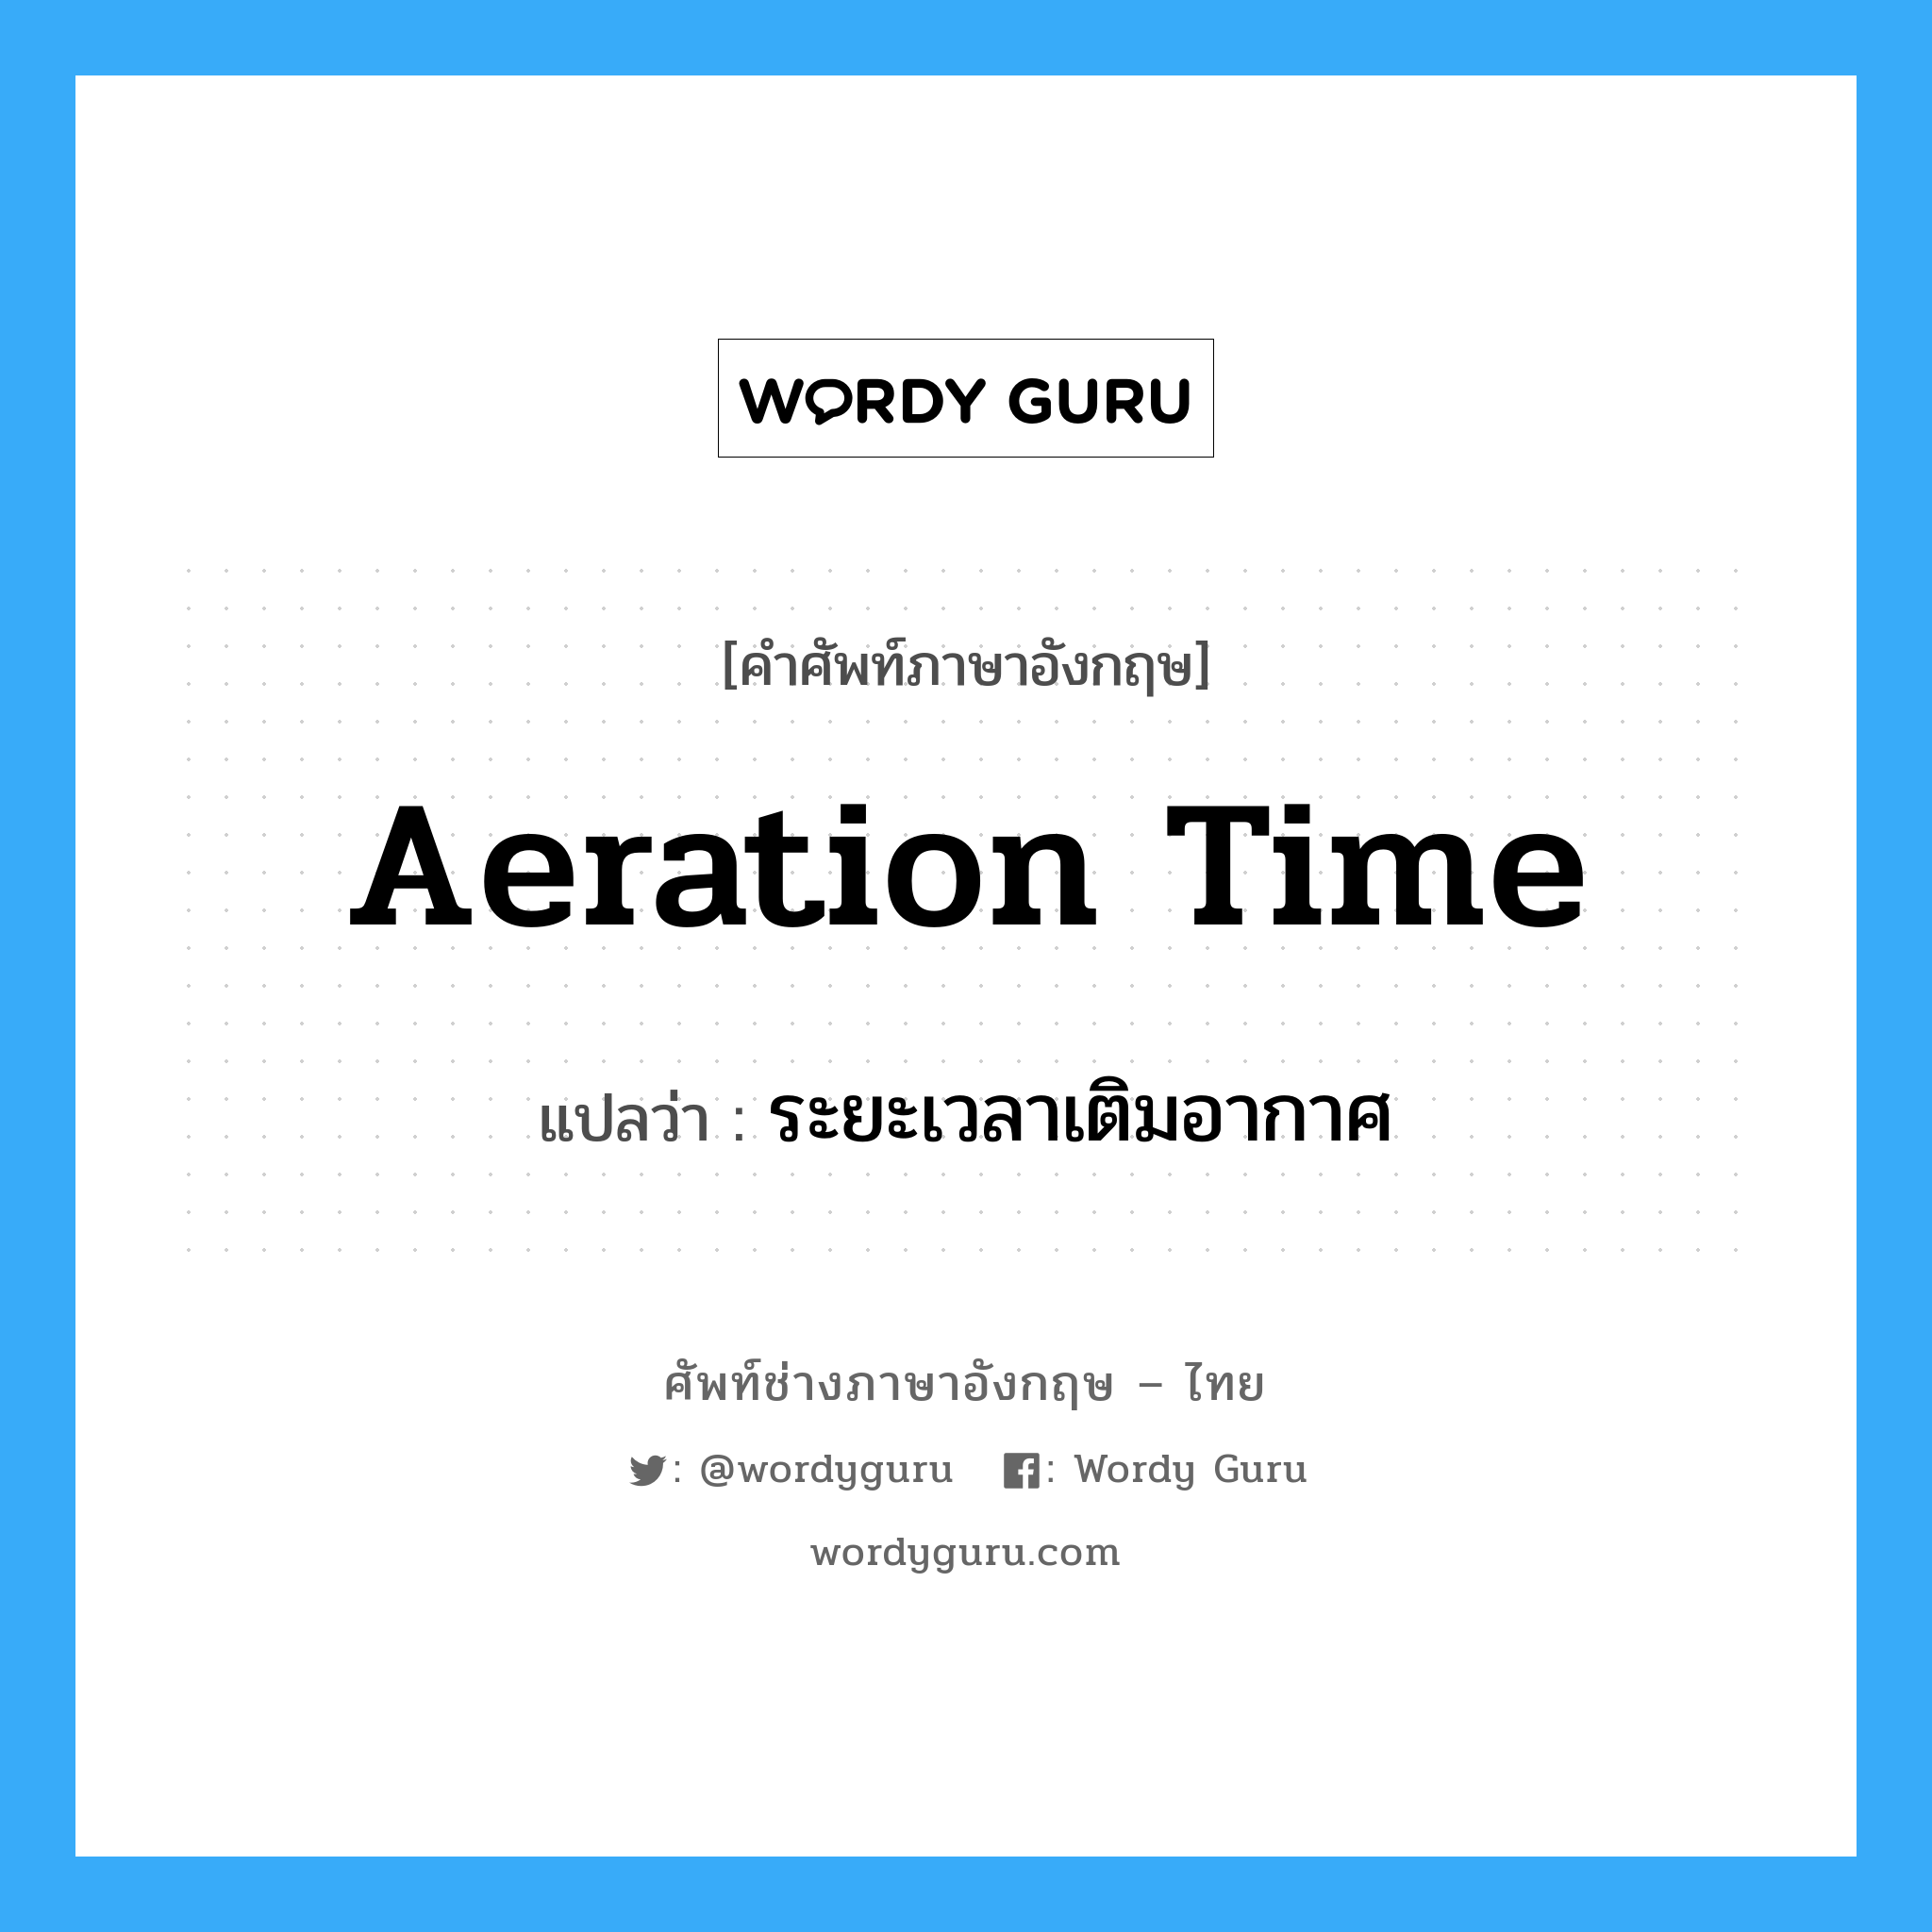 aeration time แปลว่า?, คำศัพท์ช่างภาษาอังกฤษ - ไทย aeration time คำศัพท์ภาษาอังกฤษ aeration time แปลว่า ระยะเวลาเติมอากาศ